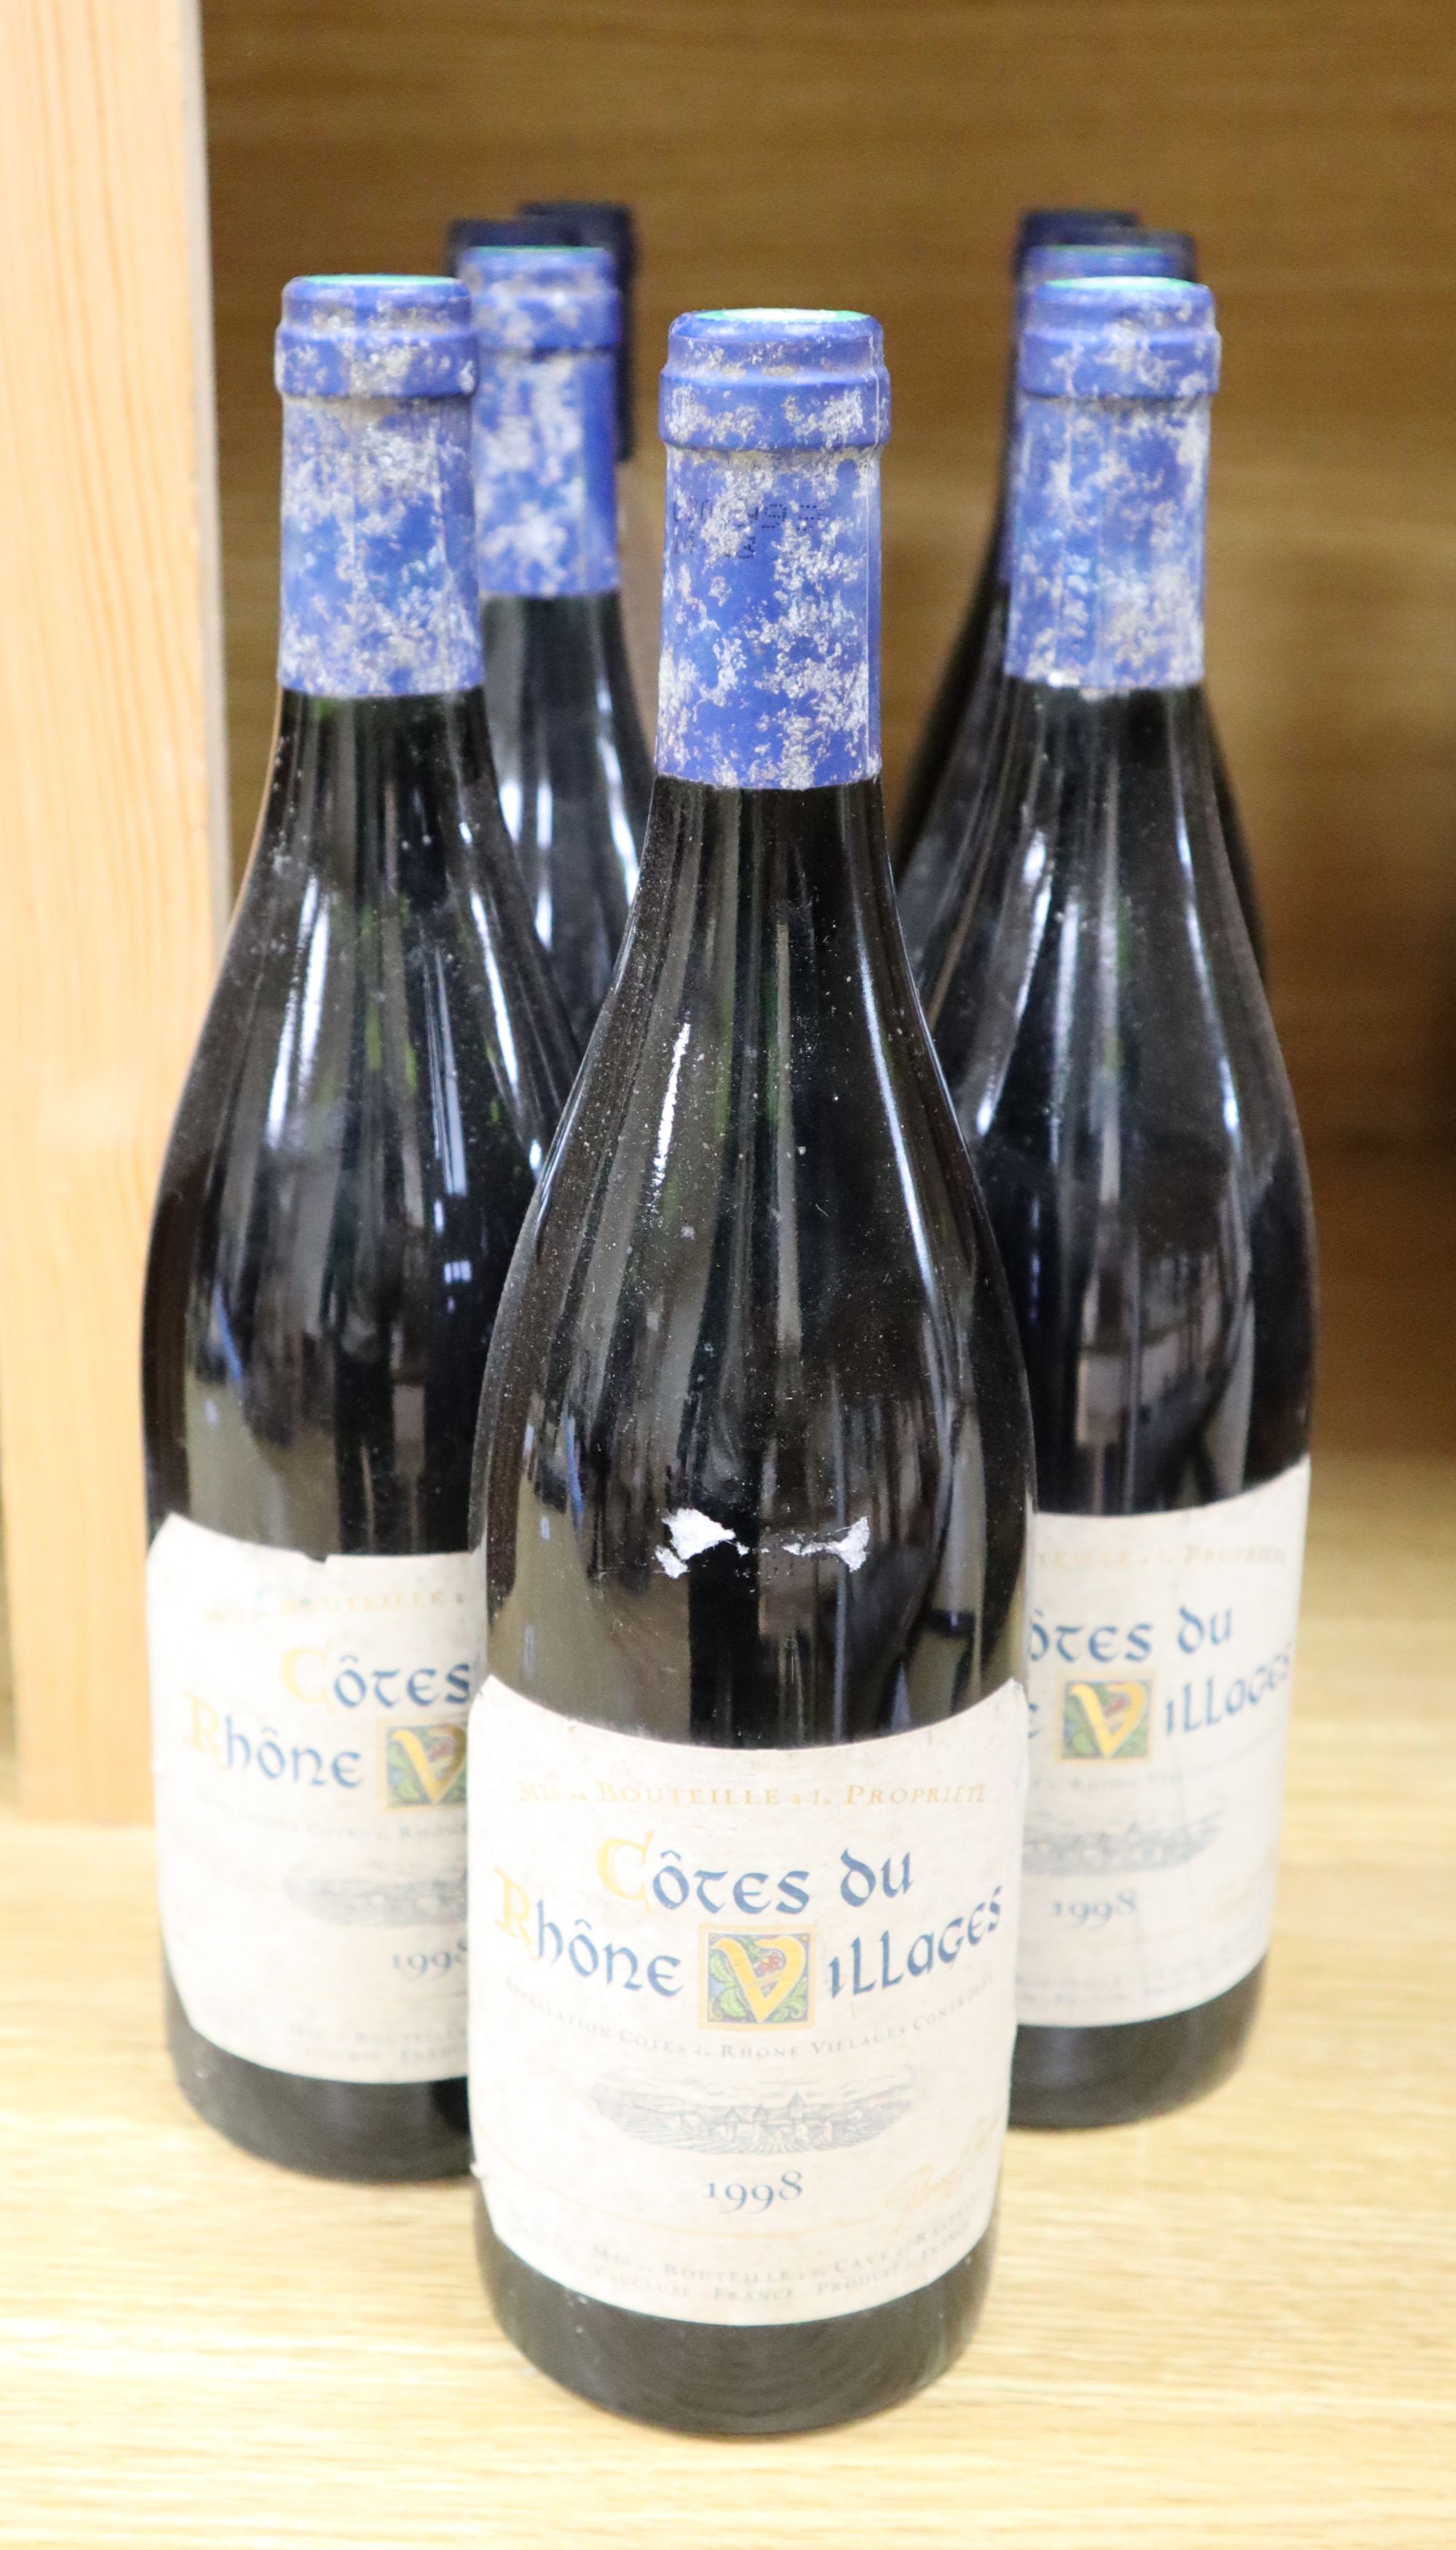 Nine bottles of Cotes du Rhone 1998